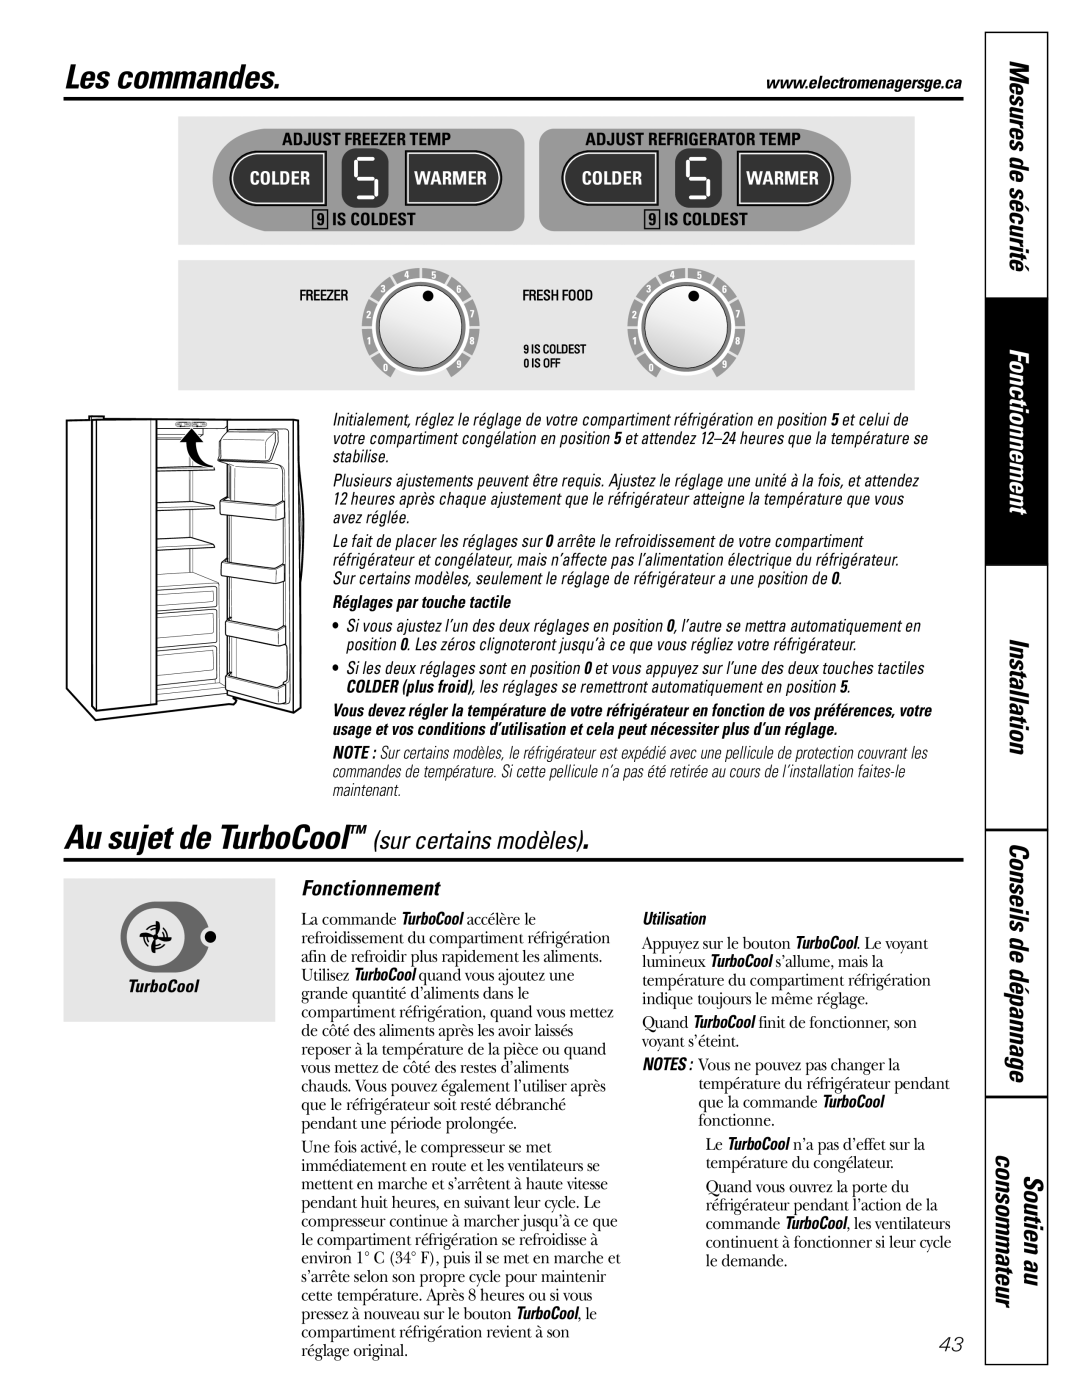 GE Monogram 23 Au sujet de TurboCool sur certains modèles, Les commandes, Mesures de sécurité, Fonctionnement, Soutien au 